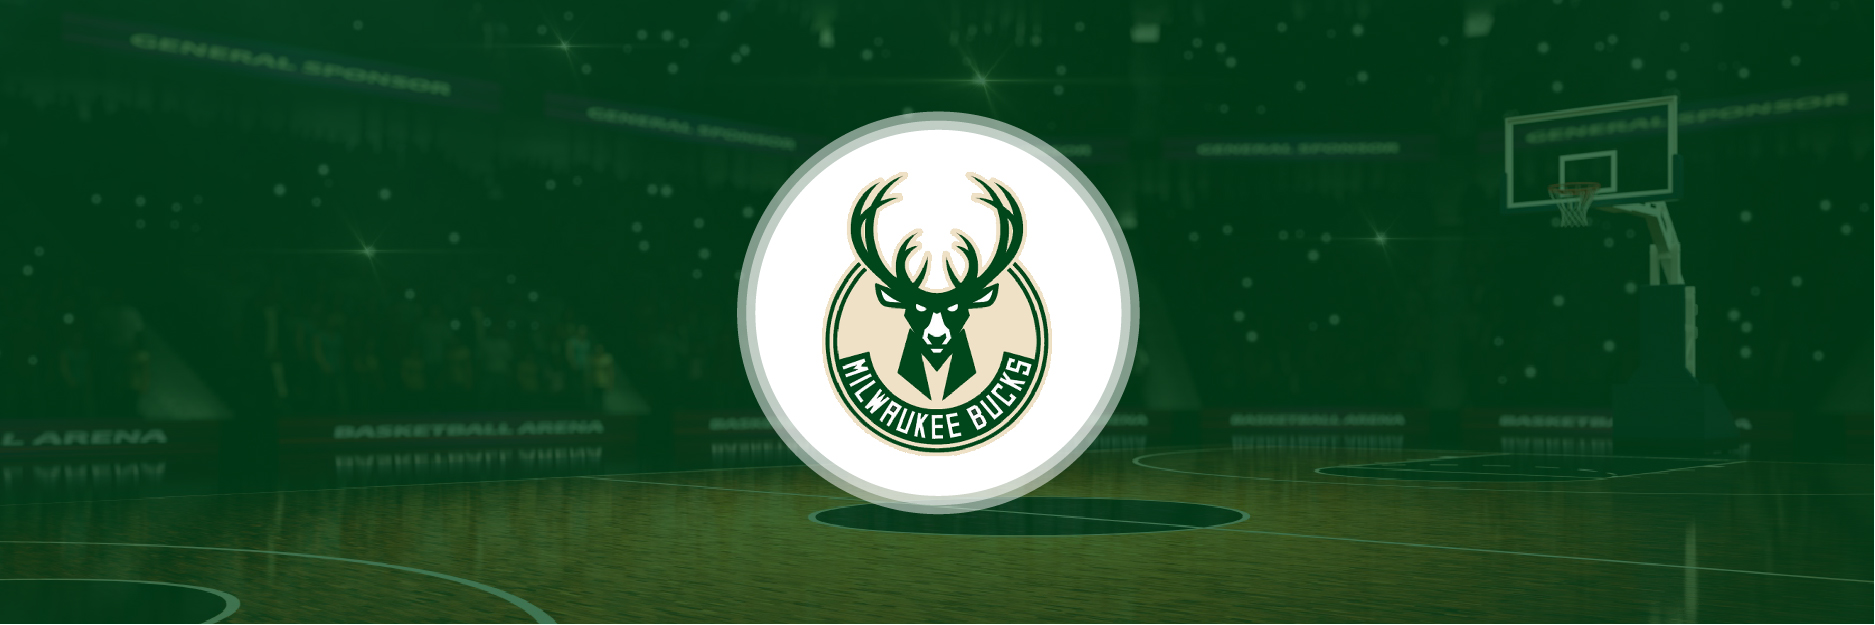 NBA Milwaukee Bucks 2020 Season Analysis